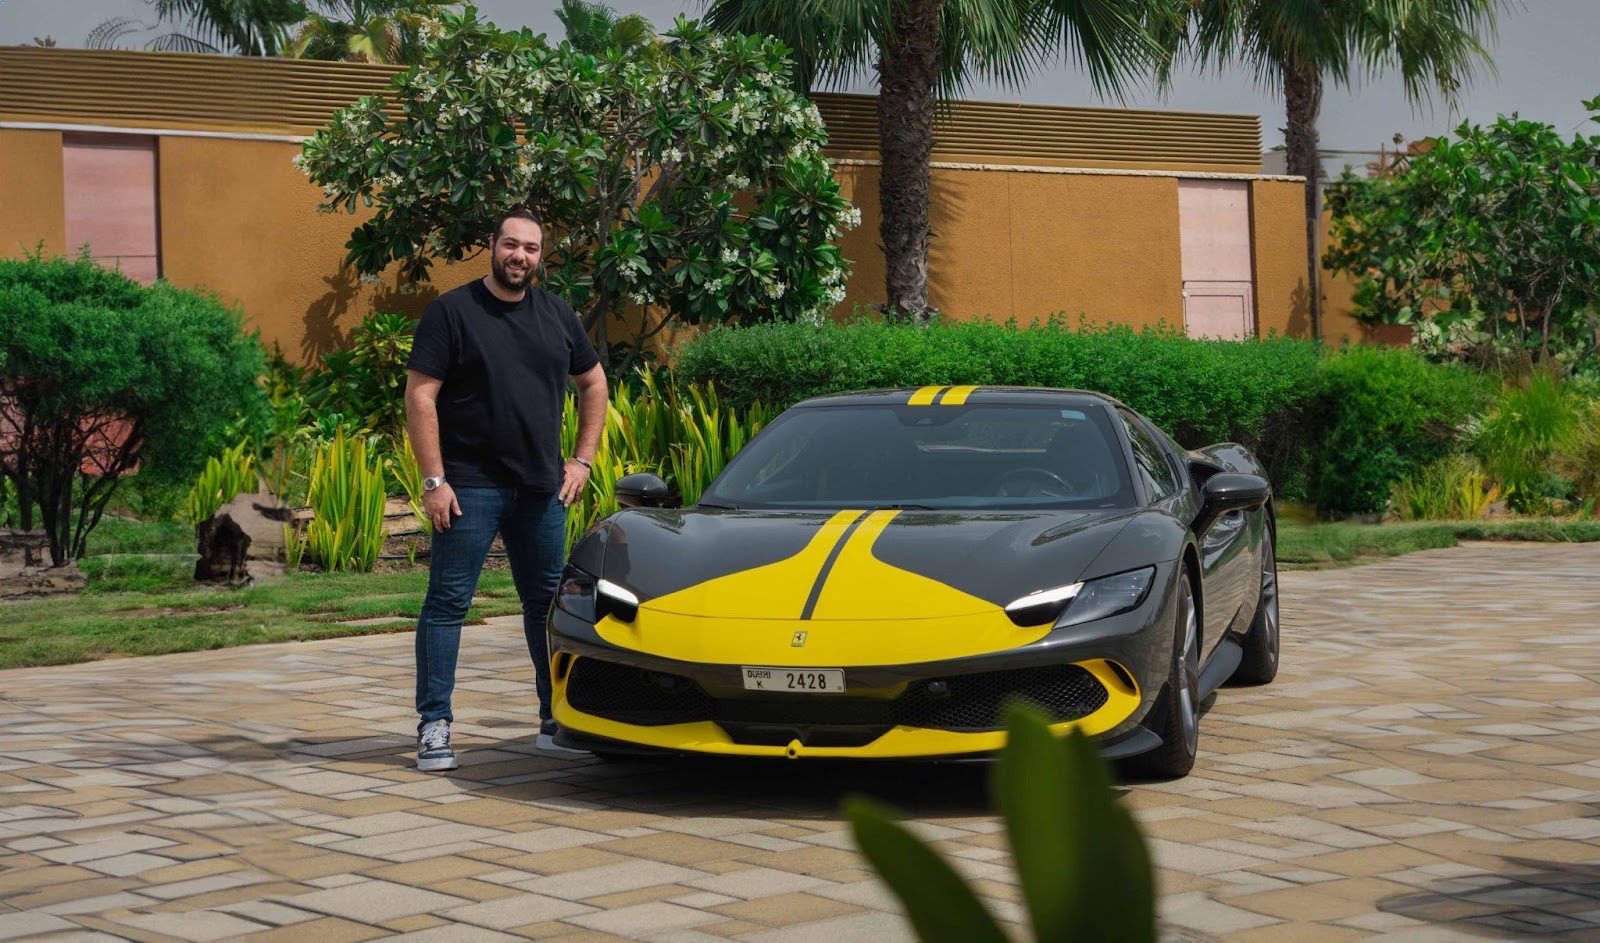 Rent A Ferrari In Dubai